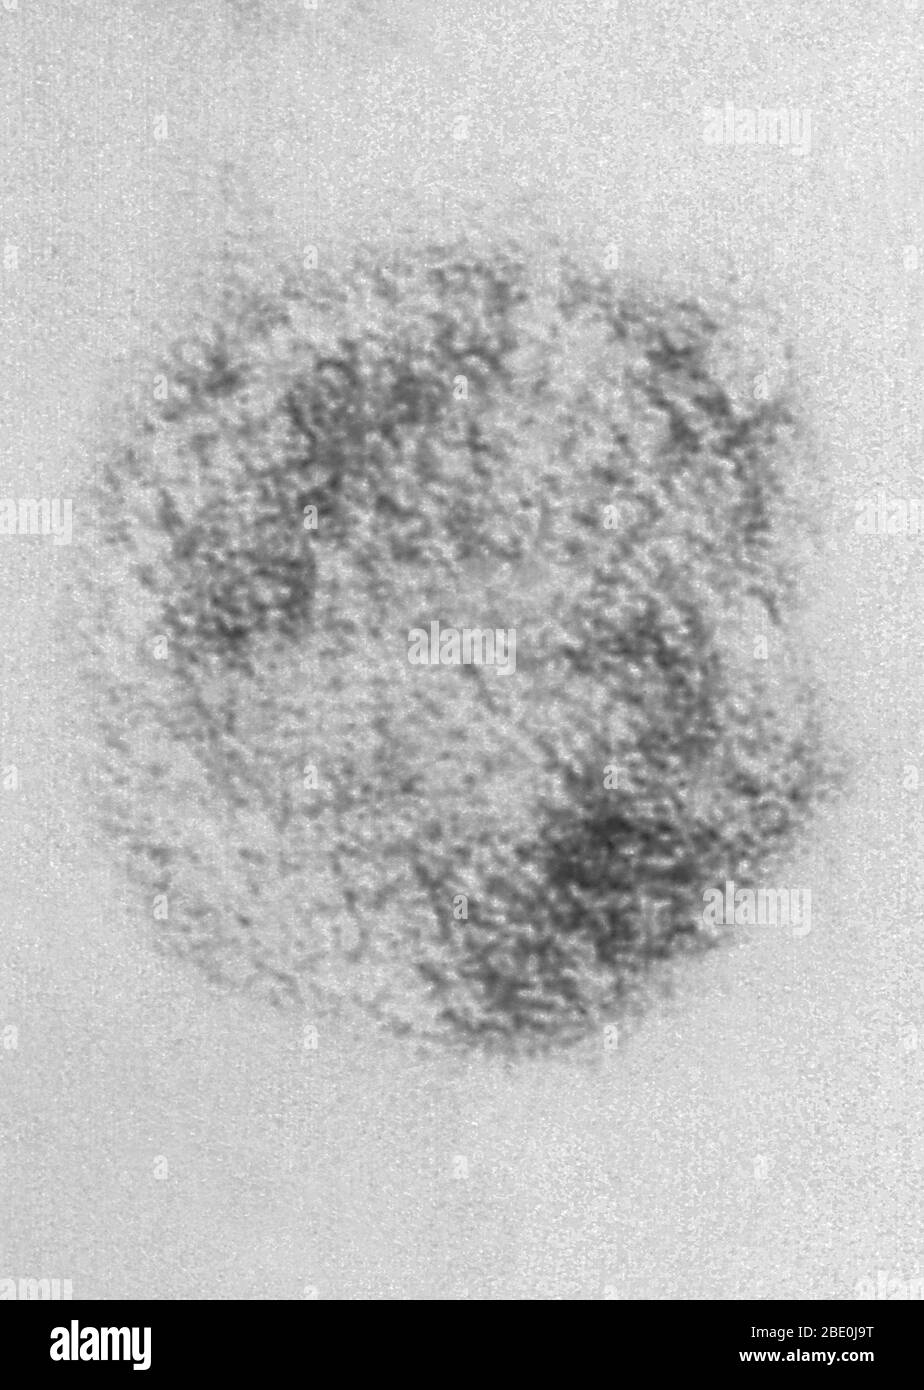 Negativ-gefärbte Transmission Electron Micrograph (TEM) zeigt die Sin nombre Virus (SNV) Virionen, die Mitglieder der Gattung Hantavirus sind, innerhalb der Familie Bunyaviridae. Das Sin nombre-Virus ist die Ursache für das Hantavirus-Herz-Lungen-Syndrom (HCPS), auch als Hantavirus-Lungensyndrom (HPS) bezeichnet, beim Menschen. Im November 1993 wurde das spezifische Hantavirus, das den Ausbruch der vier Ecken verursachte, isoliert. Mit Hilfe von Gewebe einer Hirschmaus, die in der Nähe des Wohnsitzes einer Person, die die Krankheit bekommen hatte, gefangen war, züchtete die Abteilung für Spezialpathogene in CDC das Virus im Labor Stockfoto